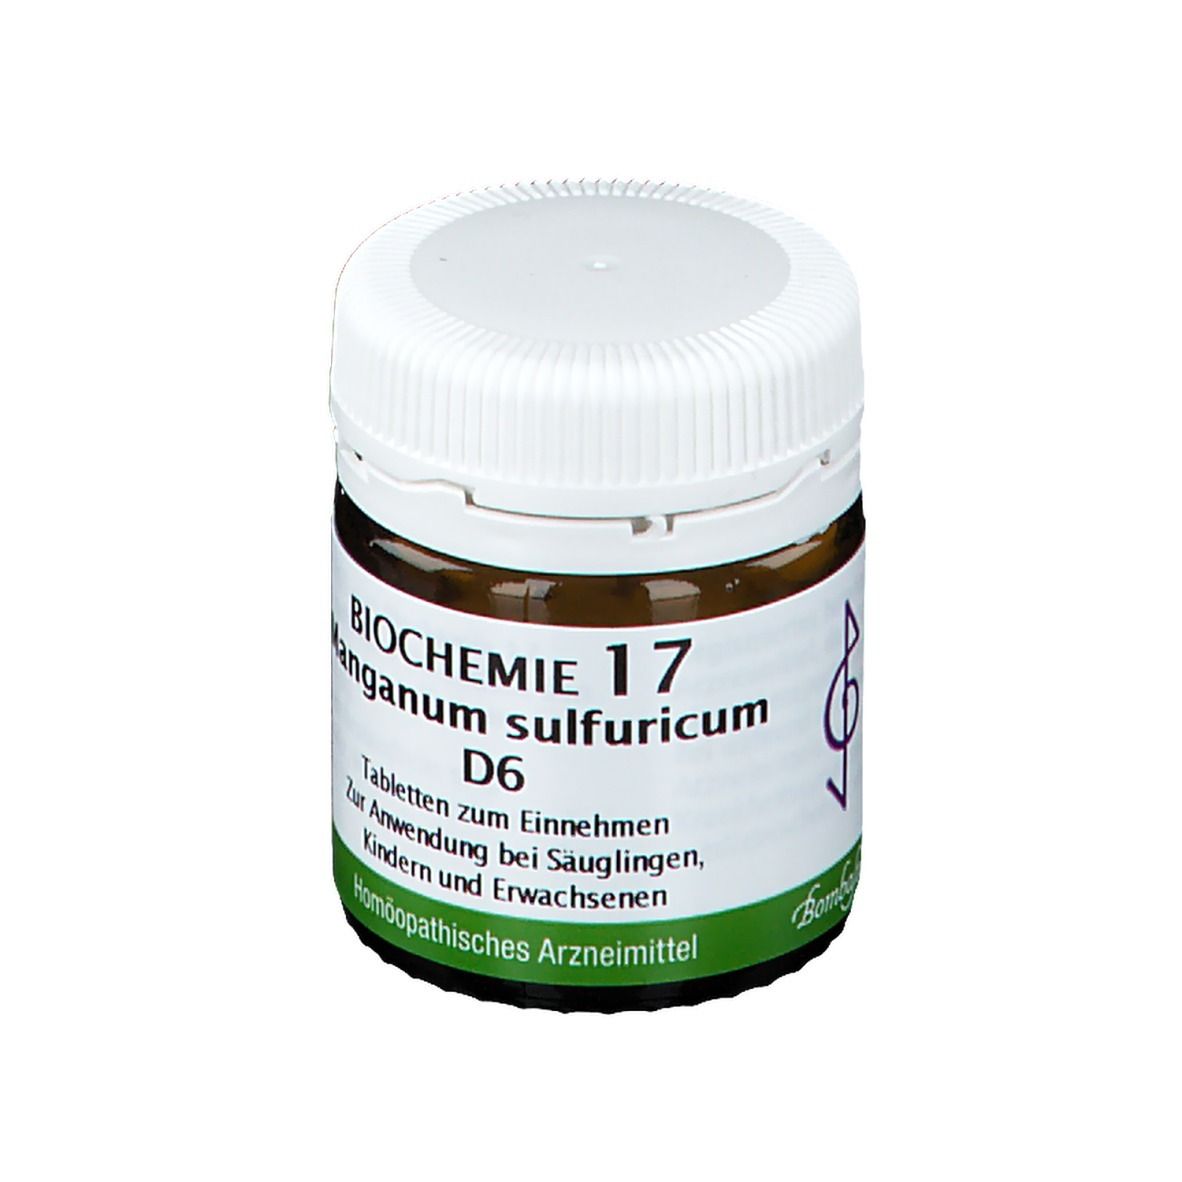 BIOCHEMIE 17 Manganum Sulfuricum D6